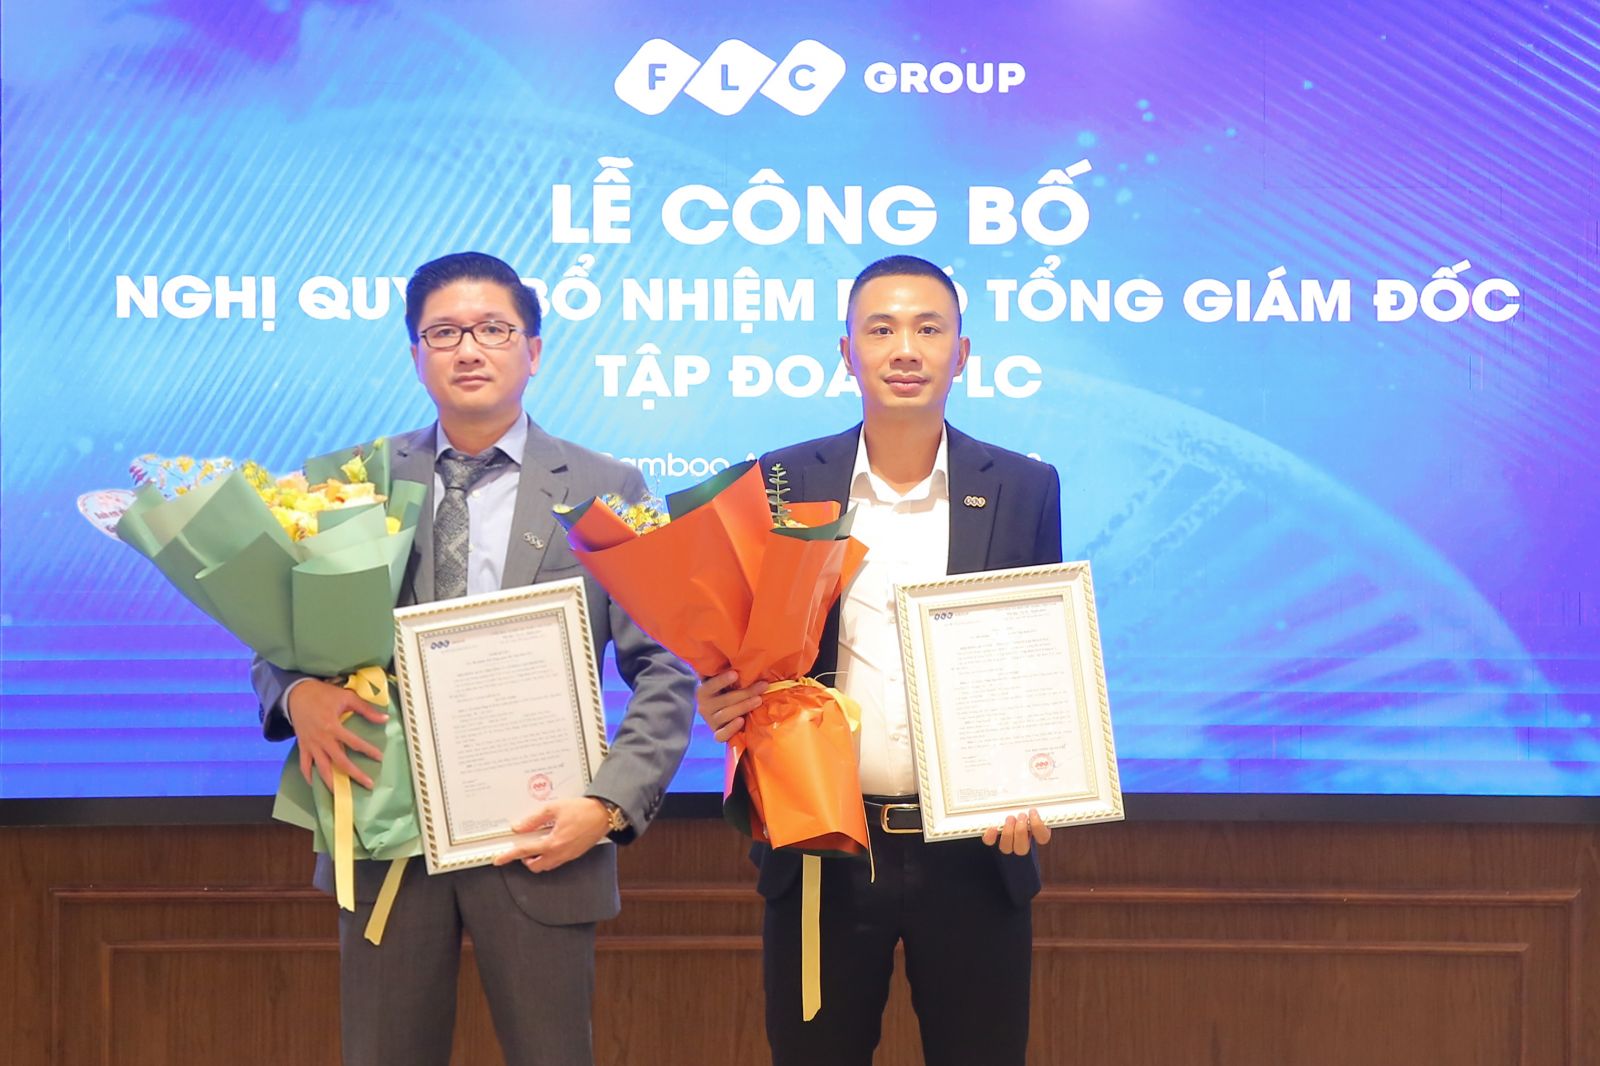 Ông Lê Doãn Linh (trái) và ông Nguyễn Chí Công (phải) nhận quyết định bổ nhiệm Phó Tổng Giám đốc mới của FLC